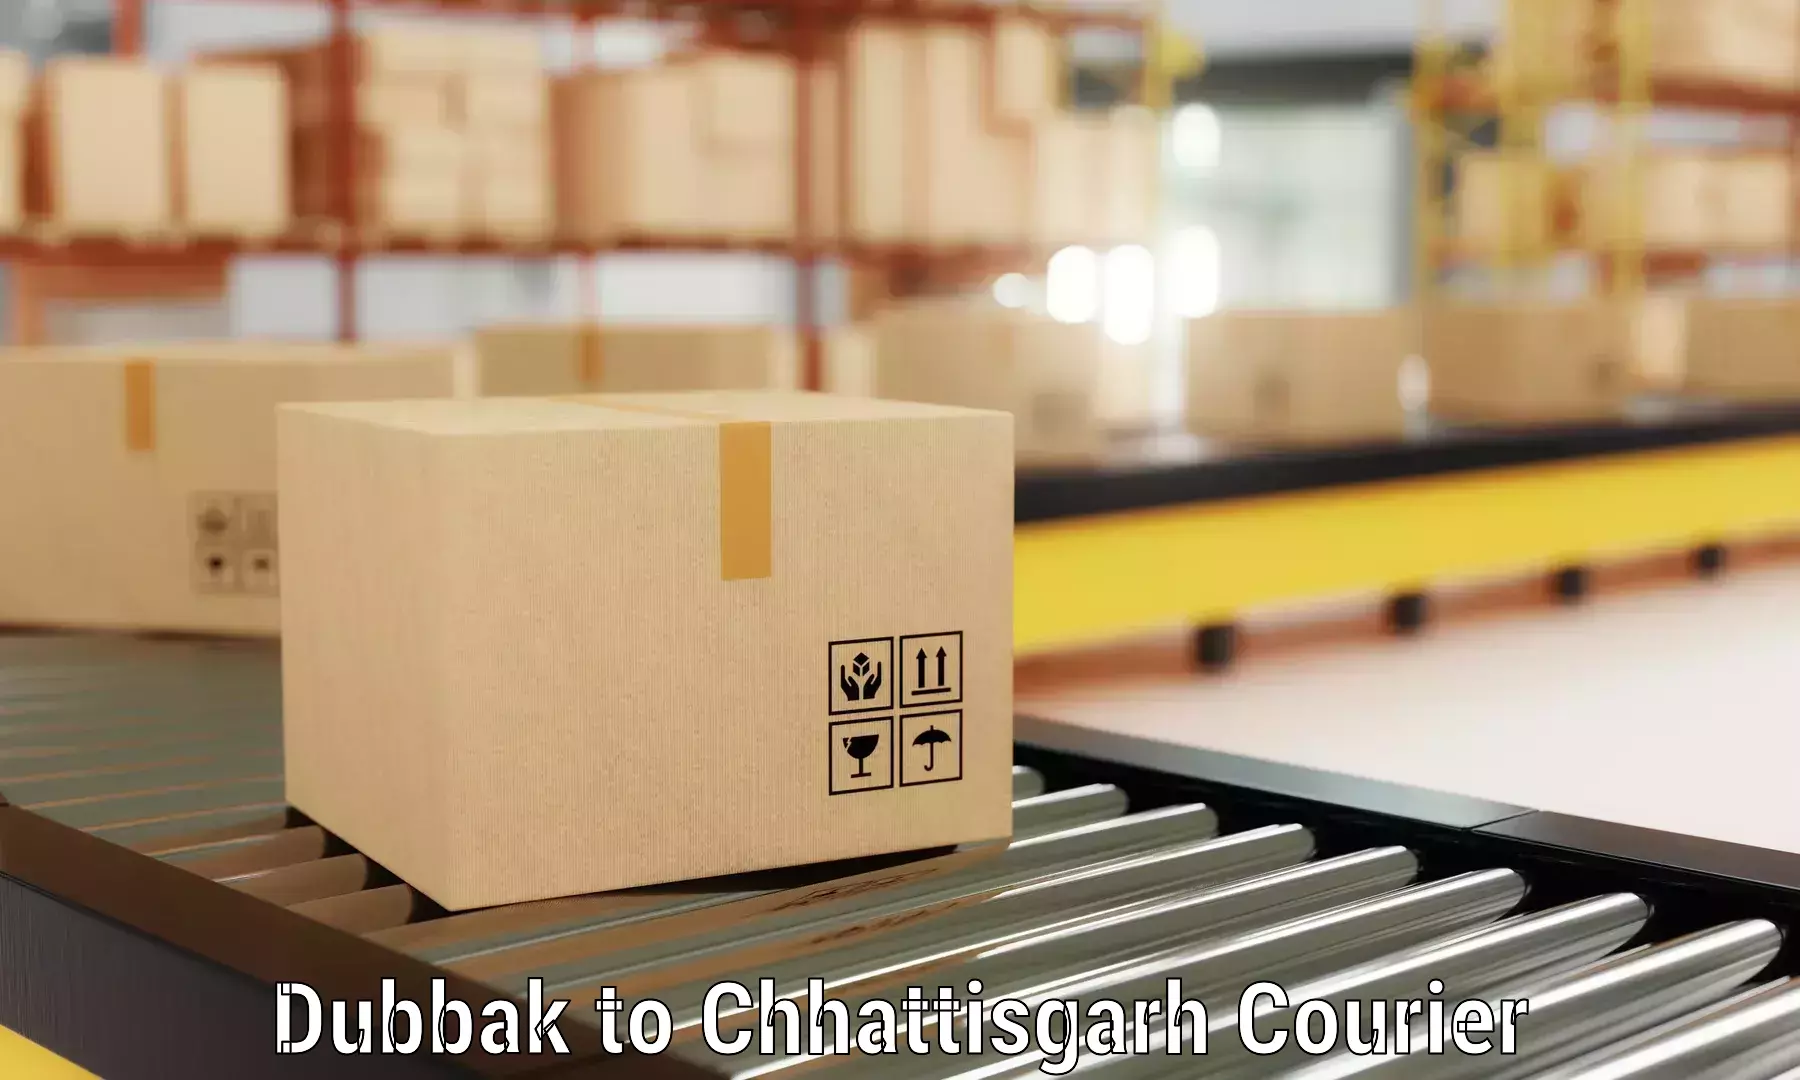 Furniture transport company Dubbak to Pendra